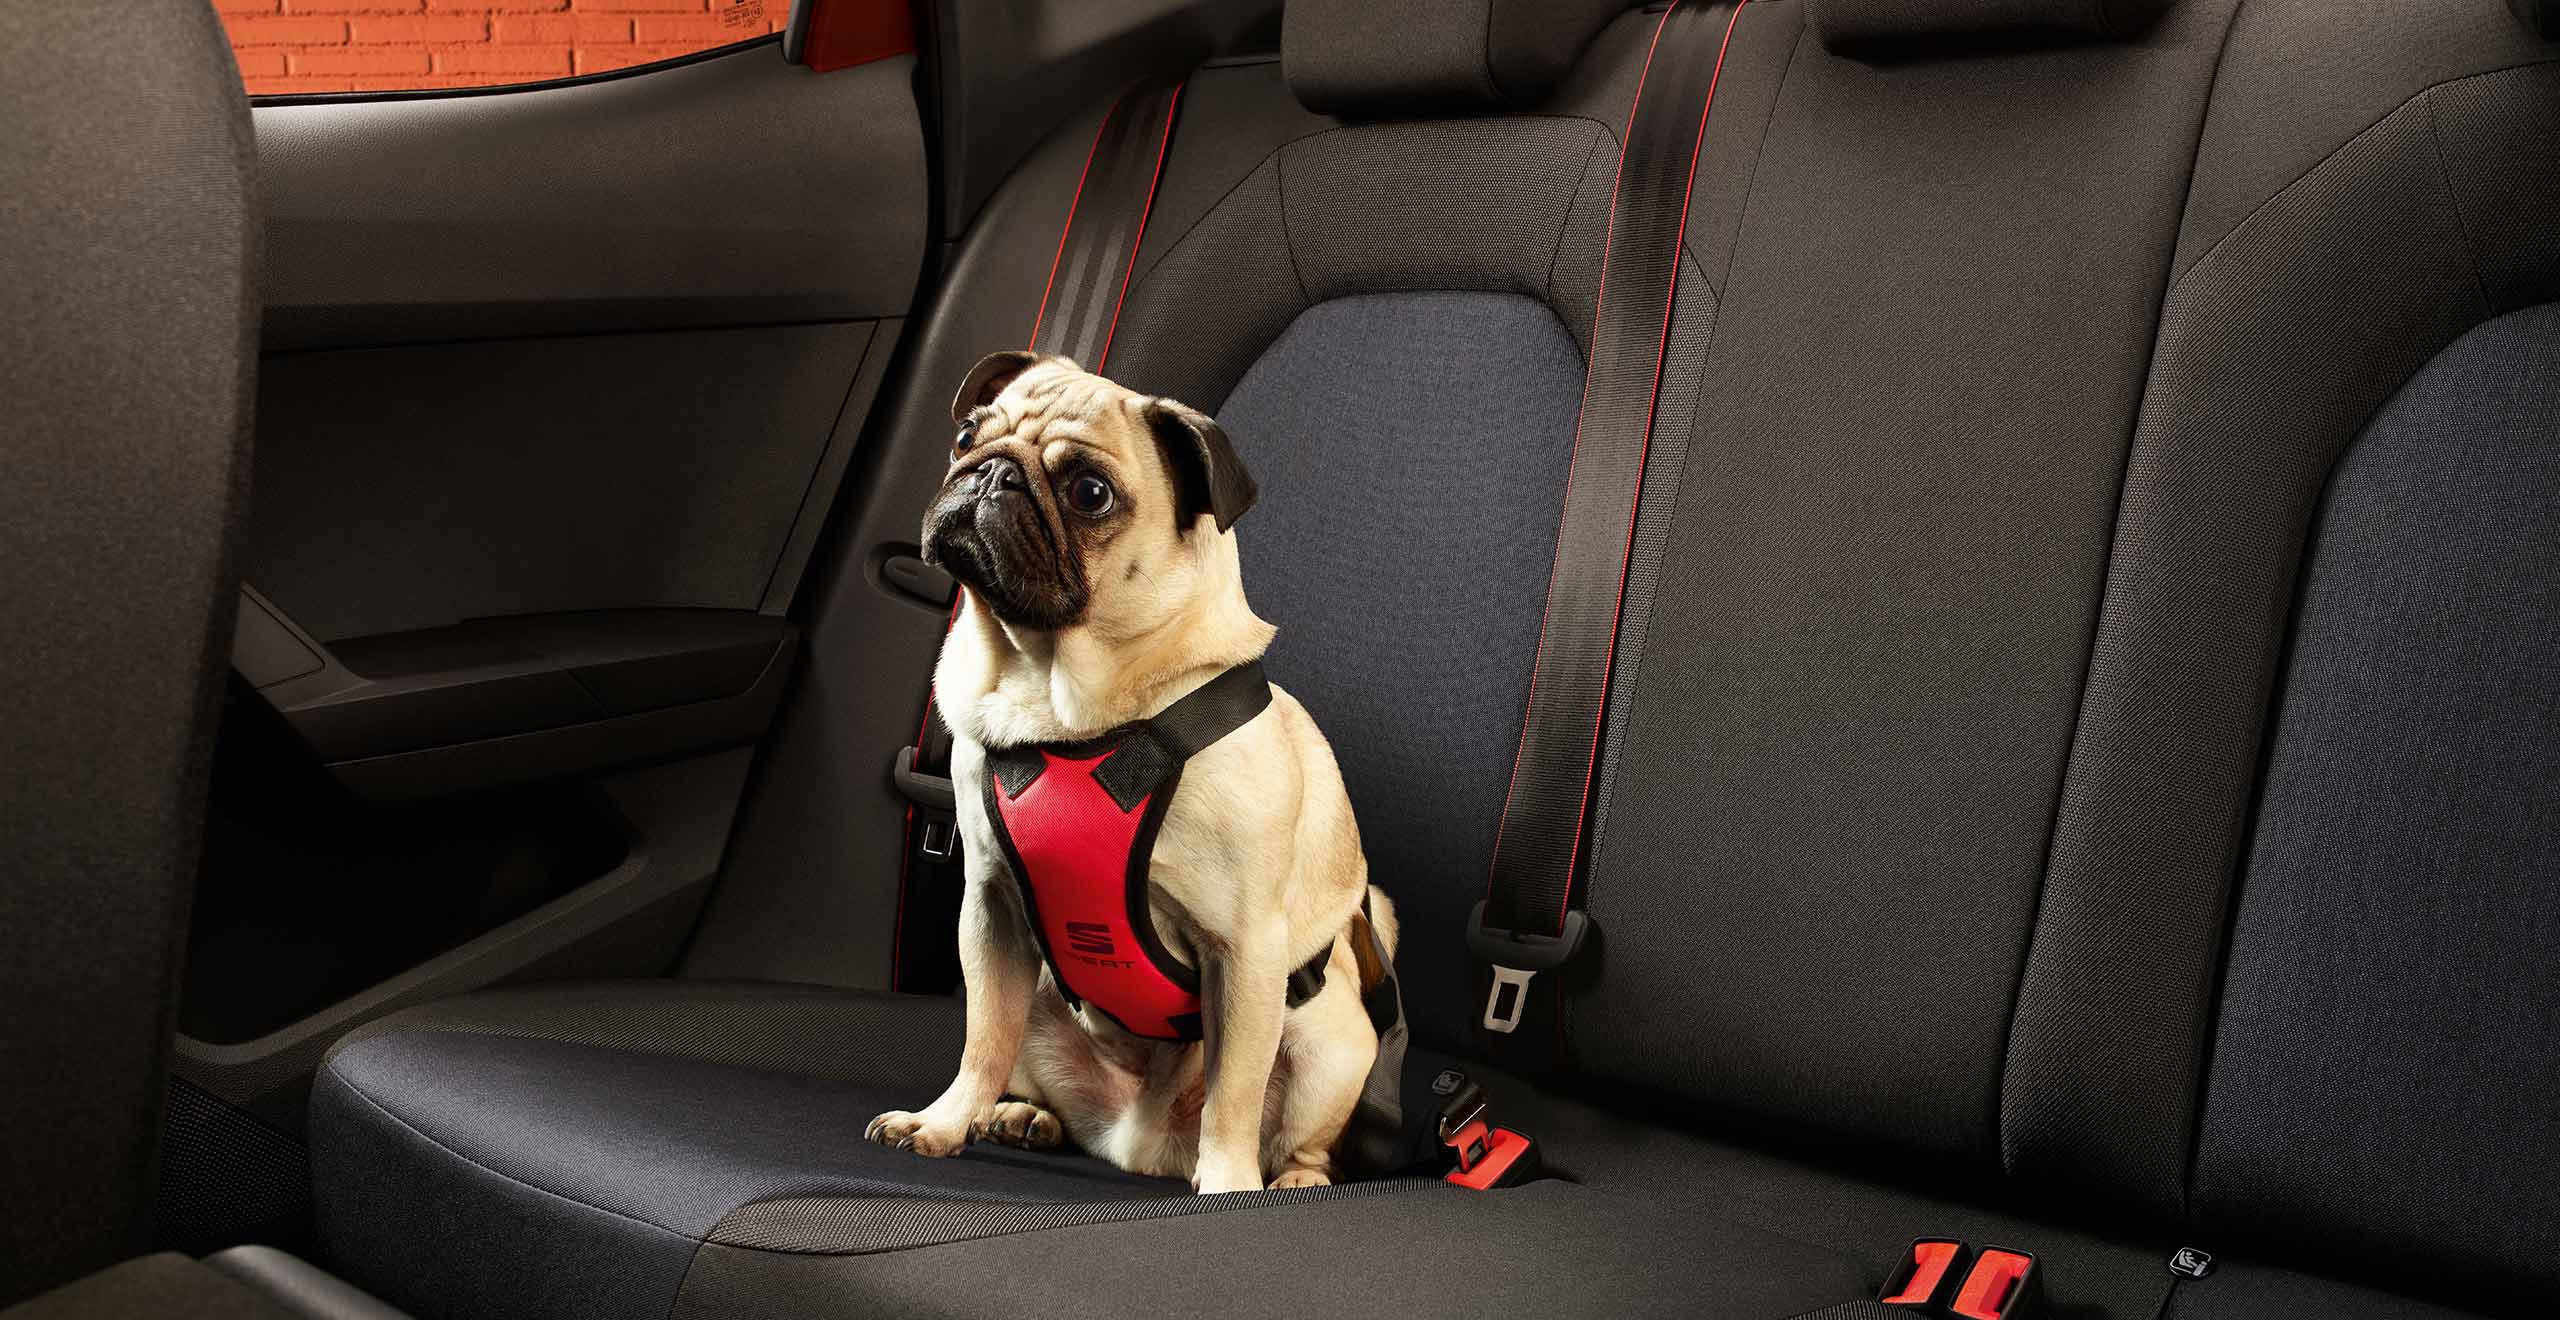 Asiento trasero SEAT Ibiza FR y perro con Accesorios SEAT Pets